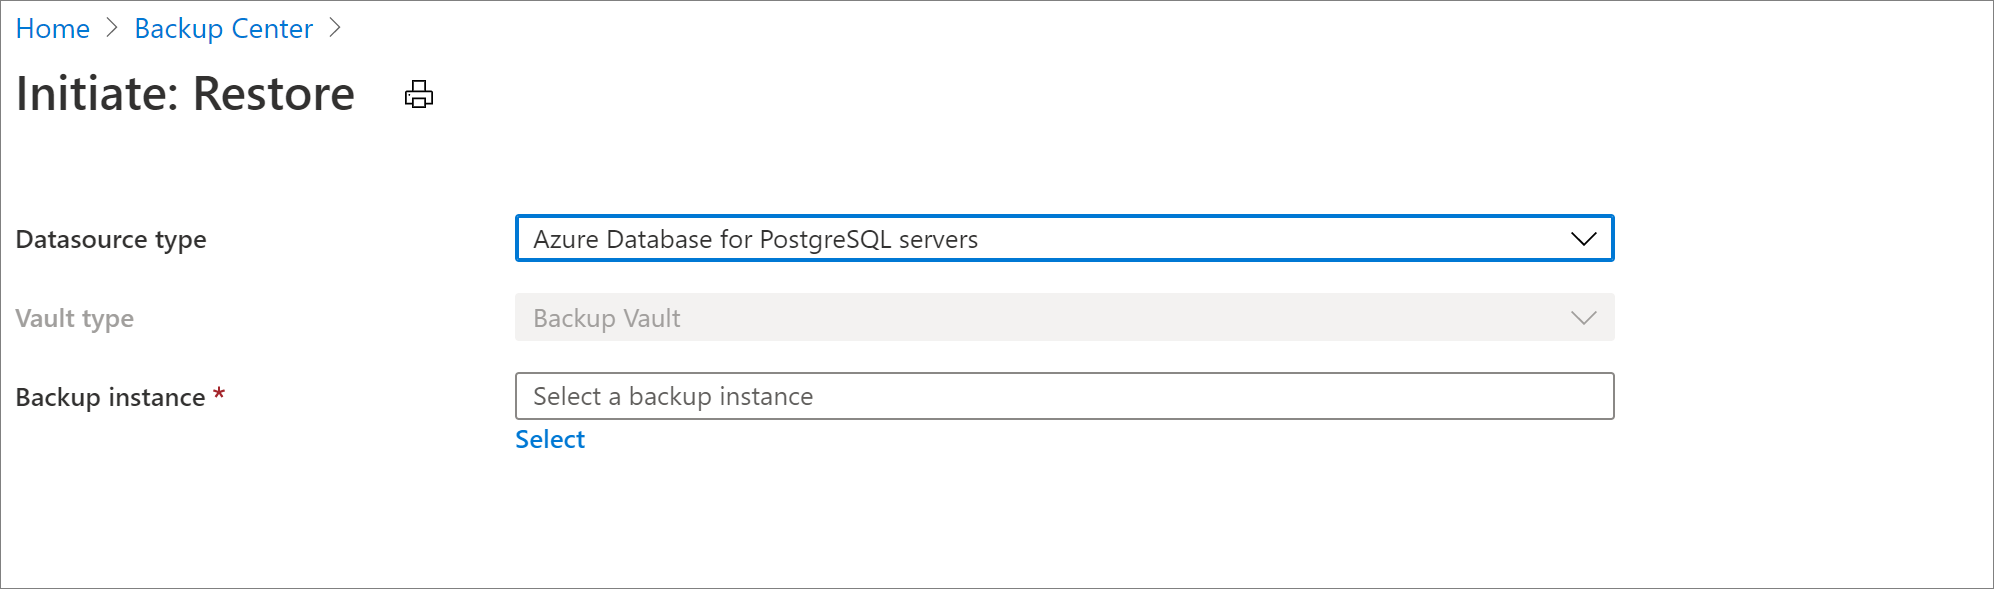 Выбор источника данных для восстановления сервера Базы данных Azure для PostgreSQL